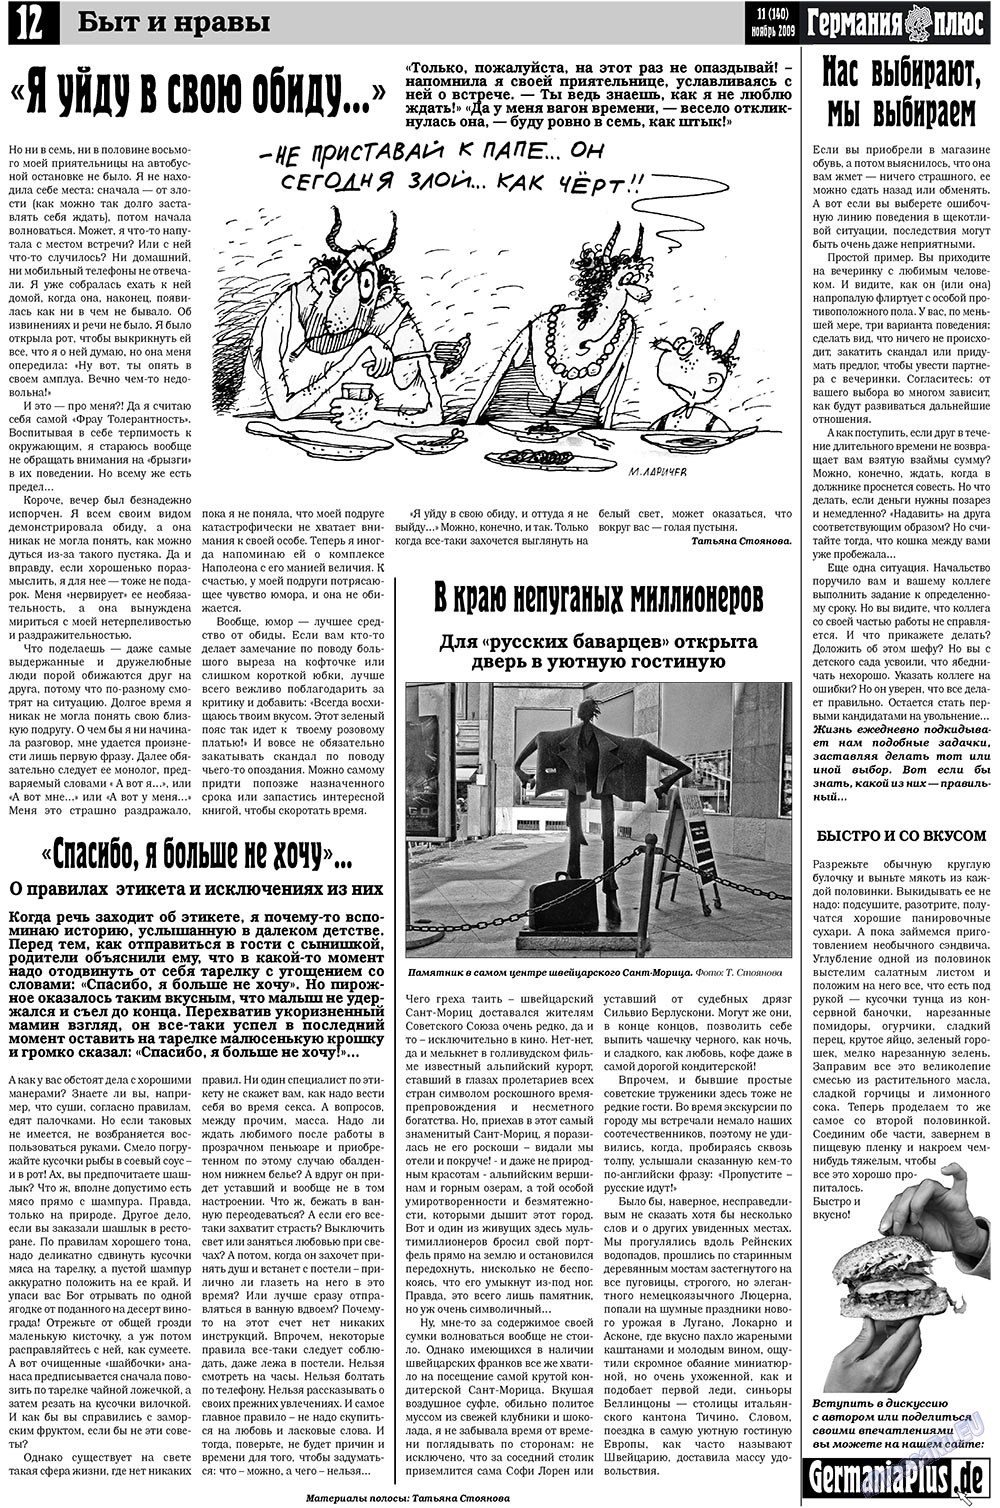 Германия плюс, газета. 2009 №11 стр.12